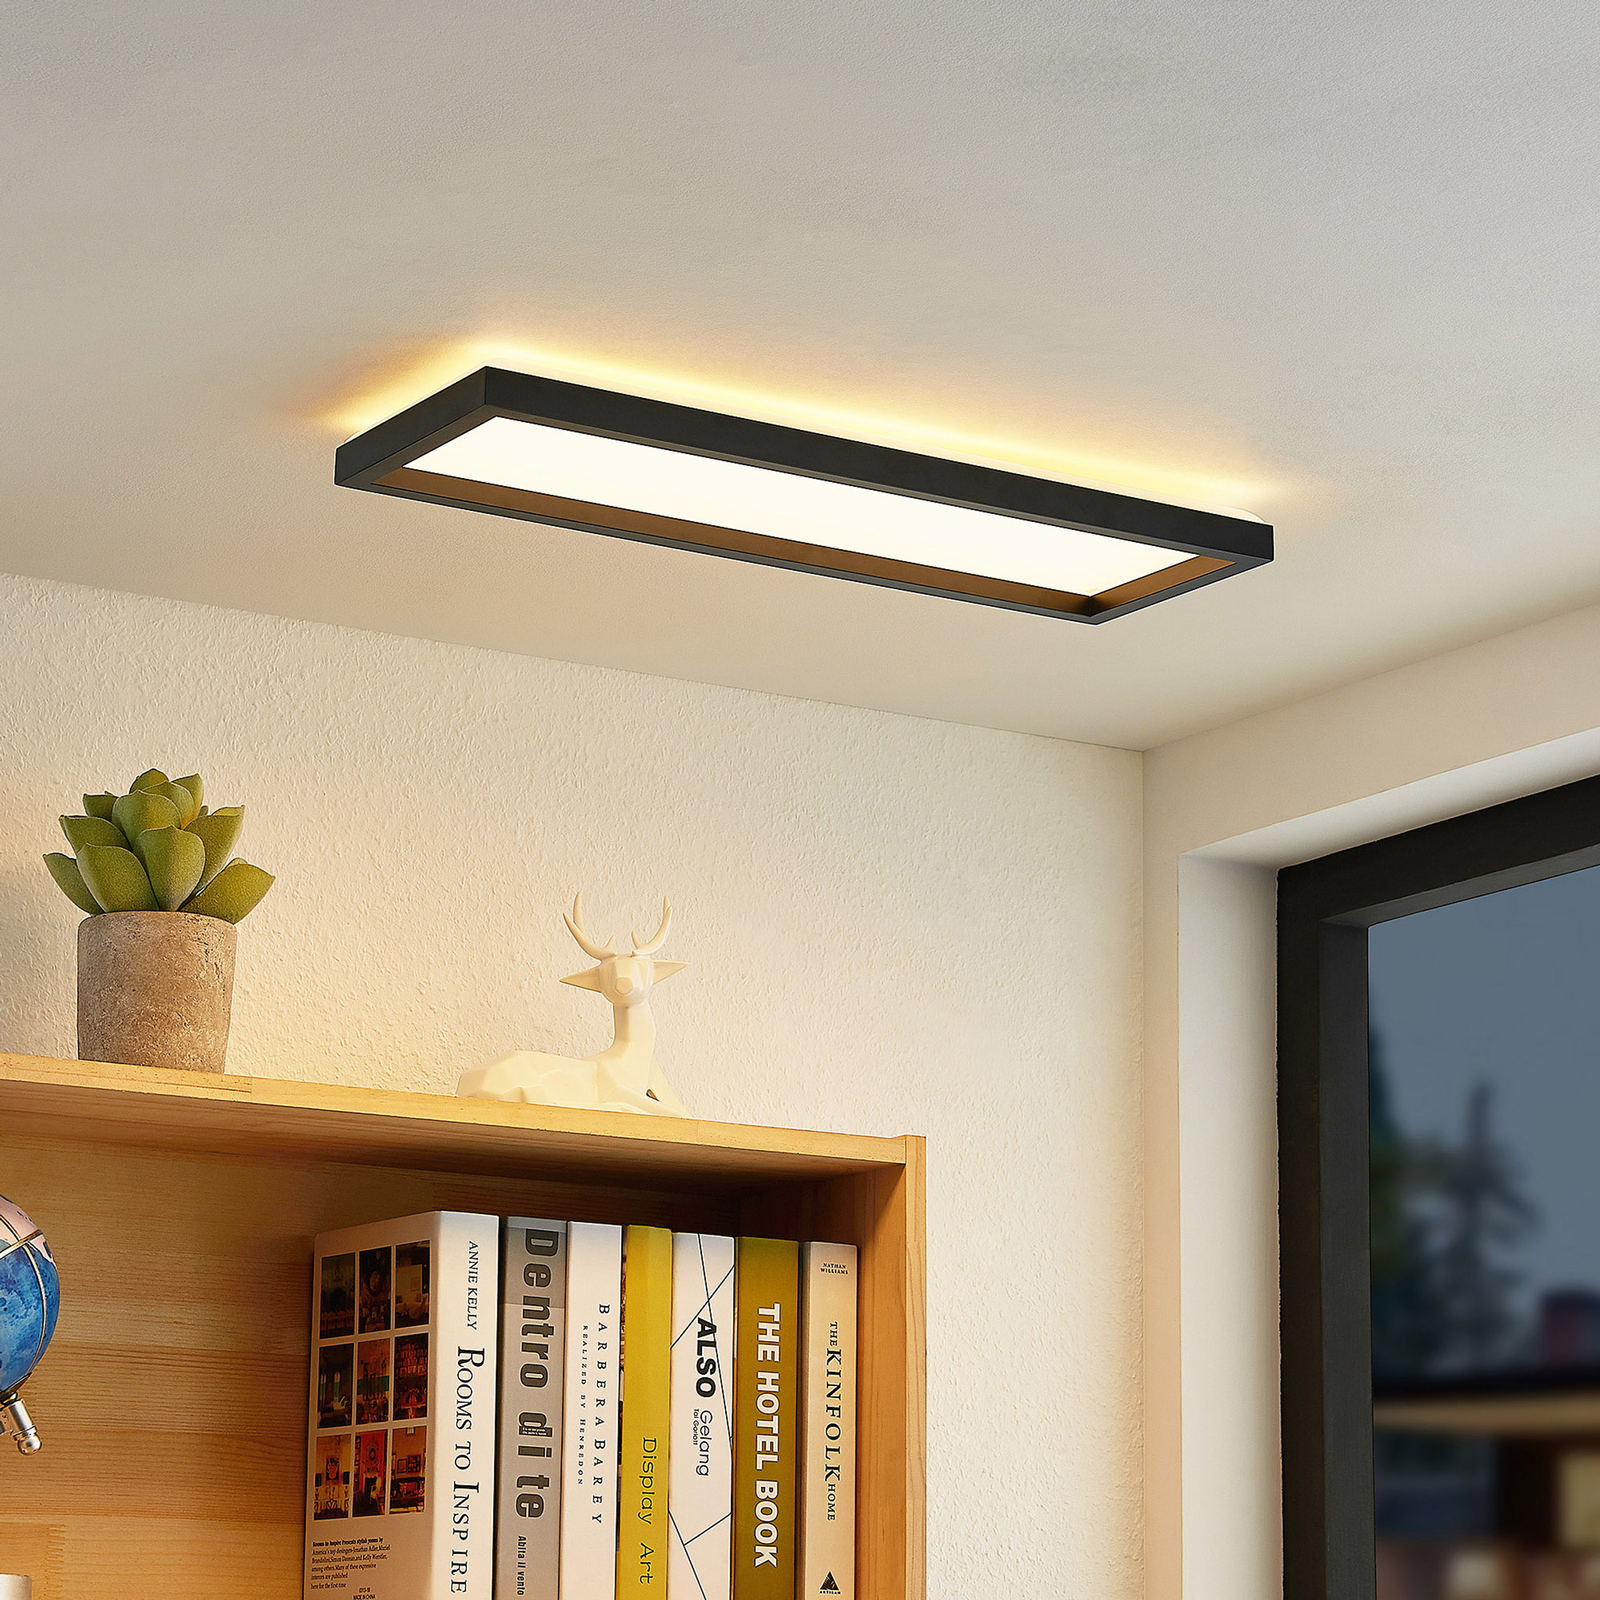 Prios Avira LED ceiling light, rectangular